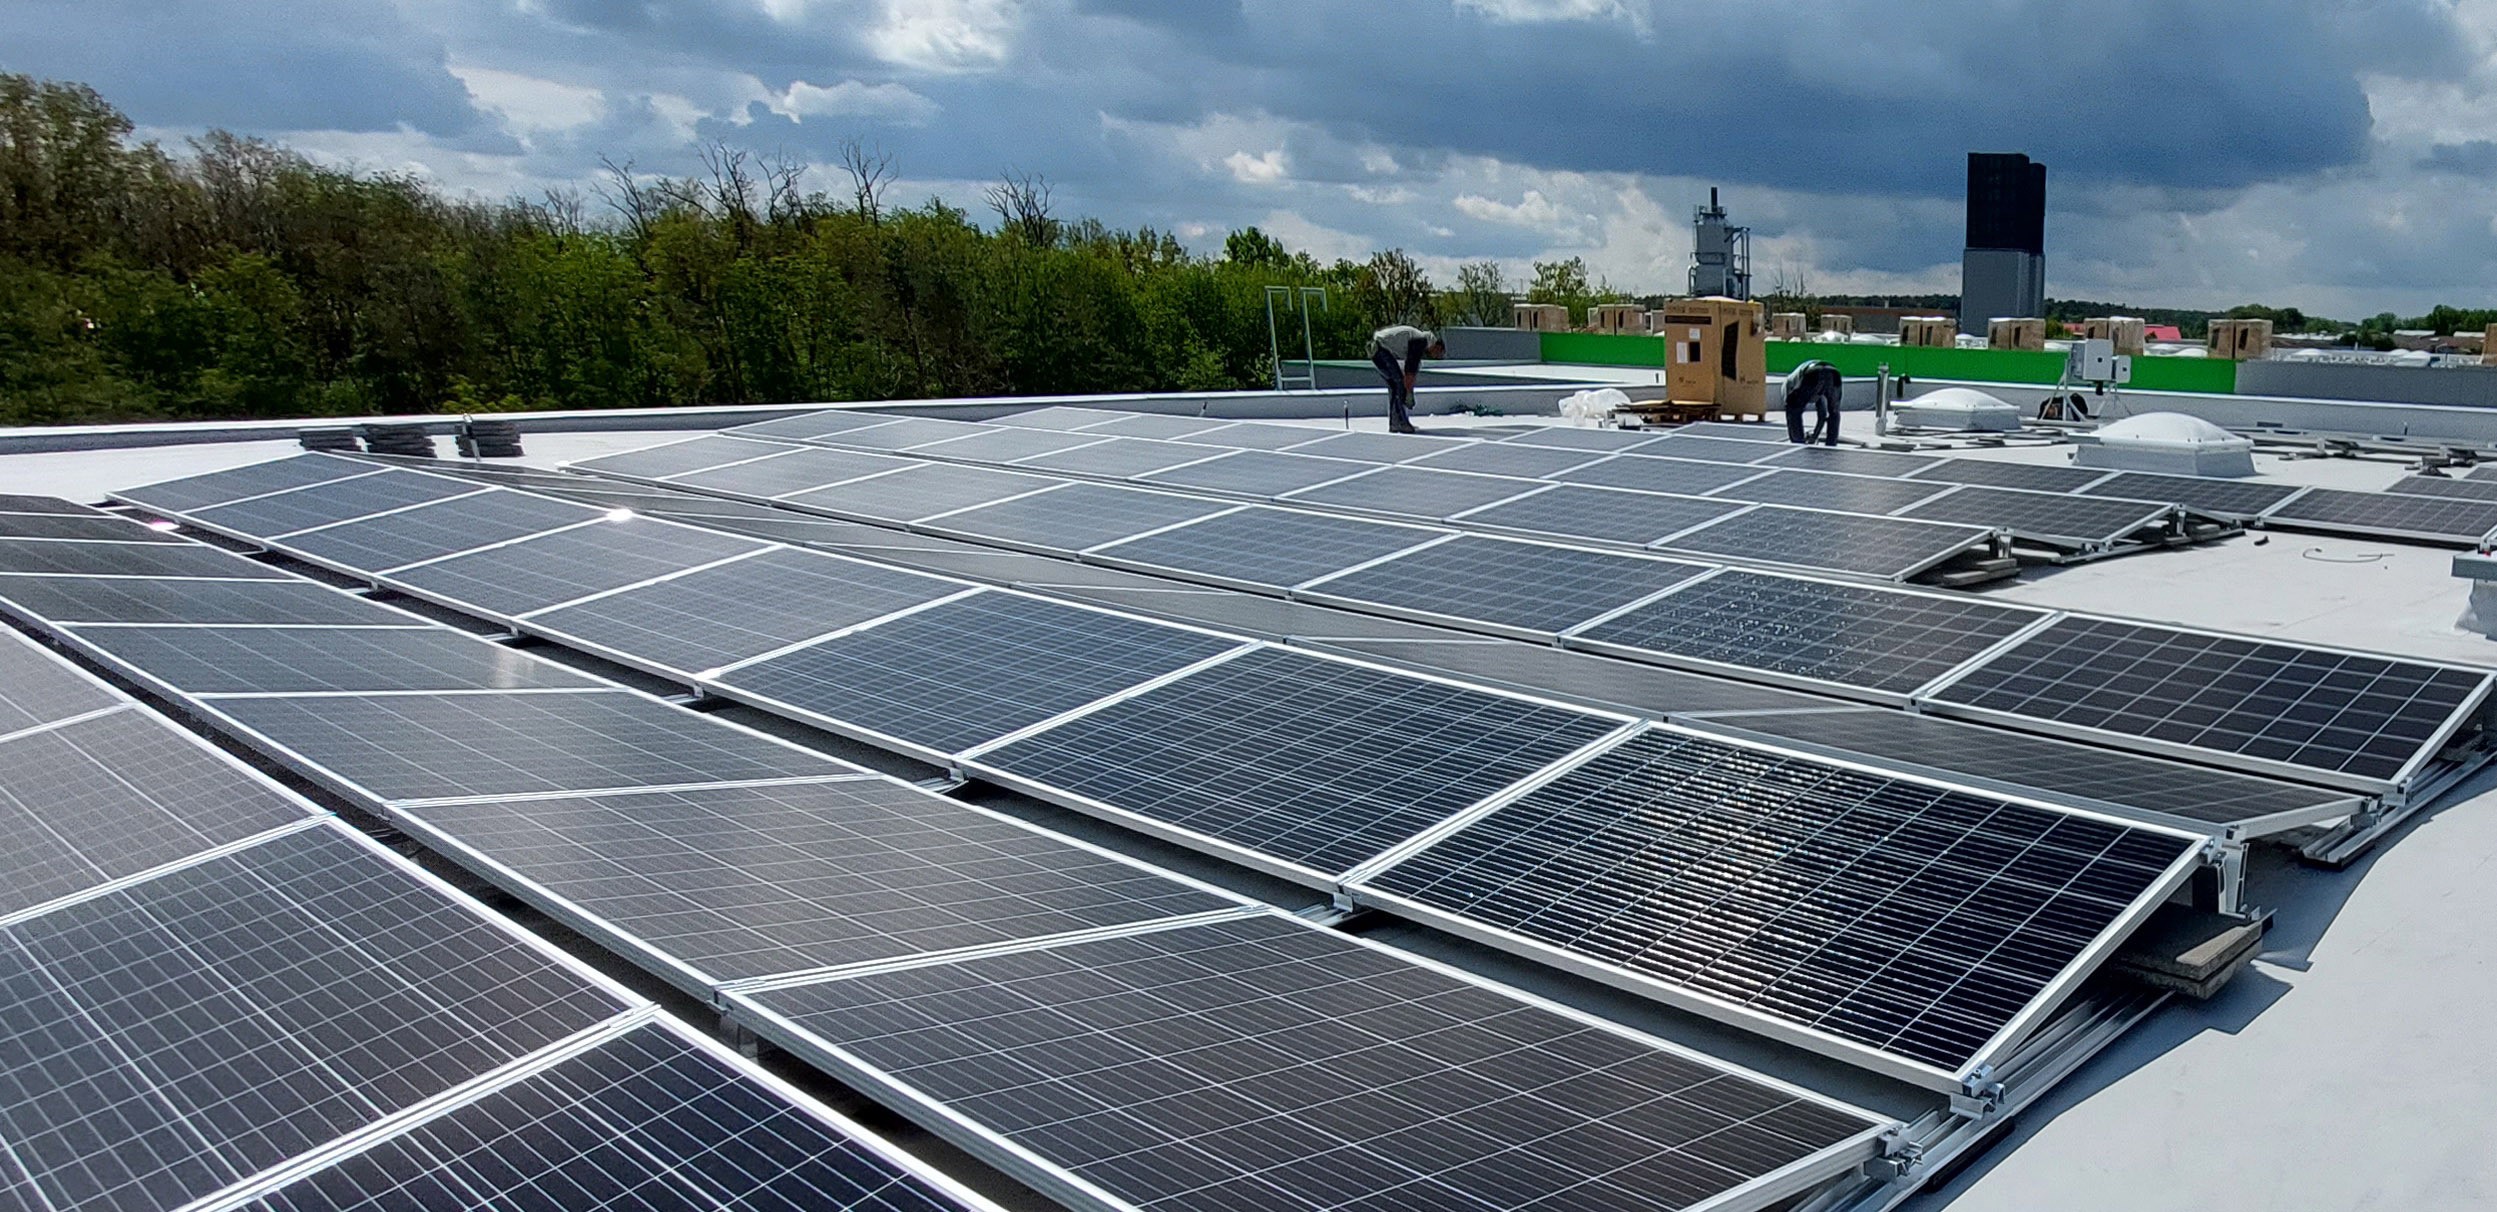 MLP Group - Green Industrial Developer wybuduje farmy fotowoltaiczne na dachach 10 parków logistycznych w Polsce